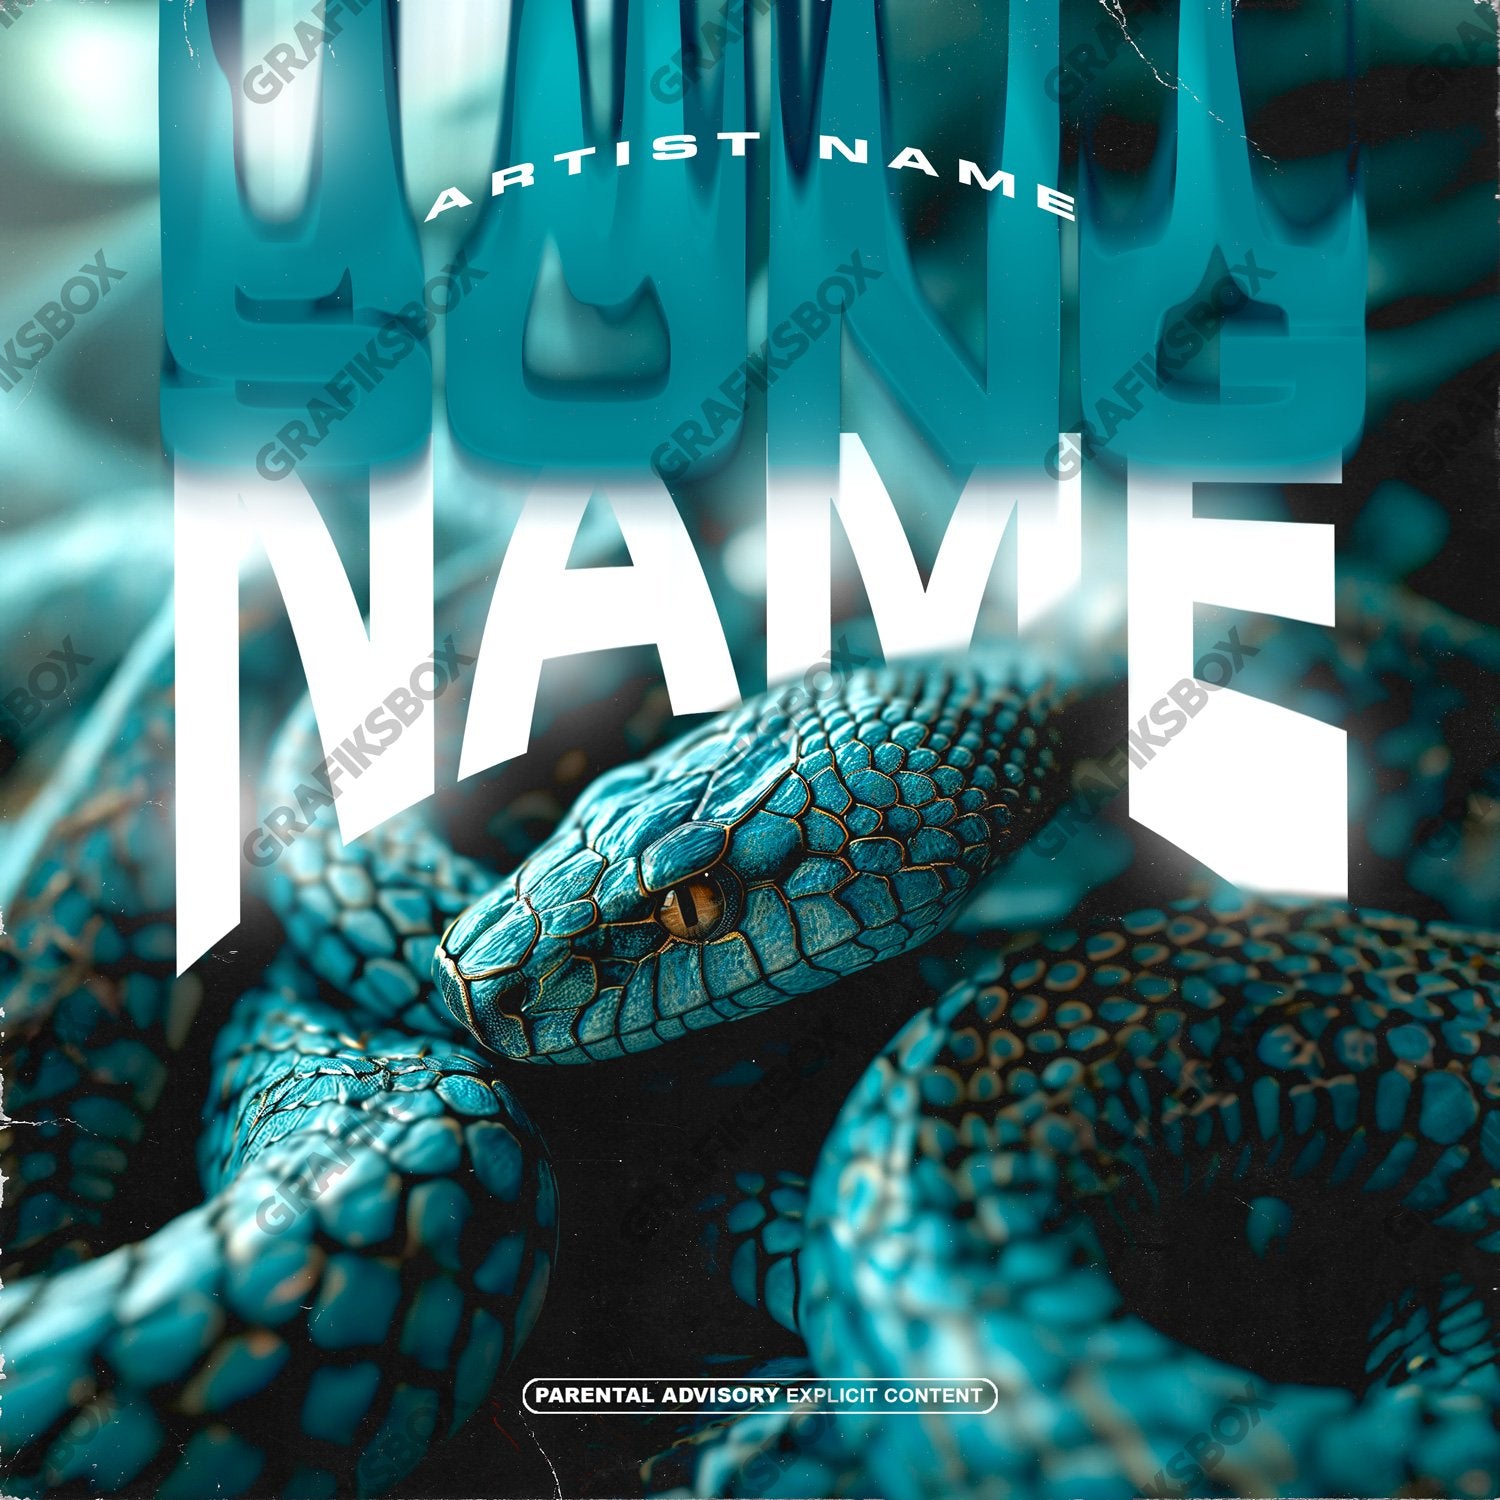 Turq Snake premade cover art